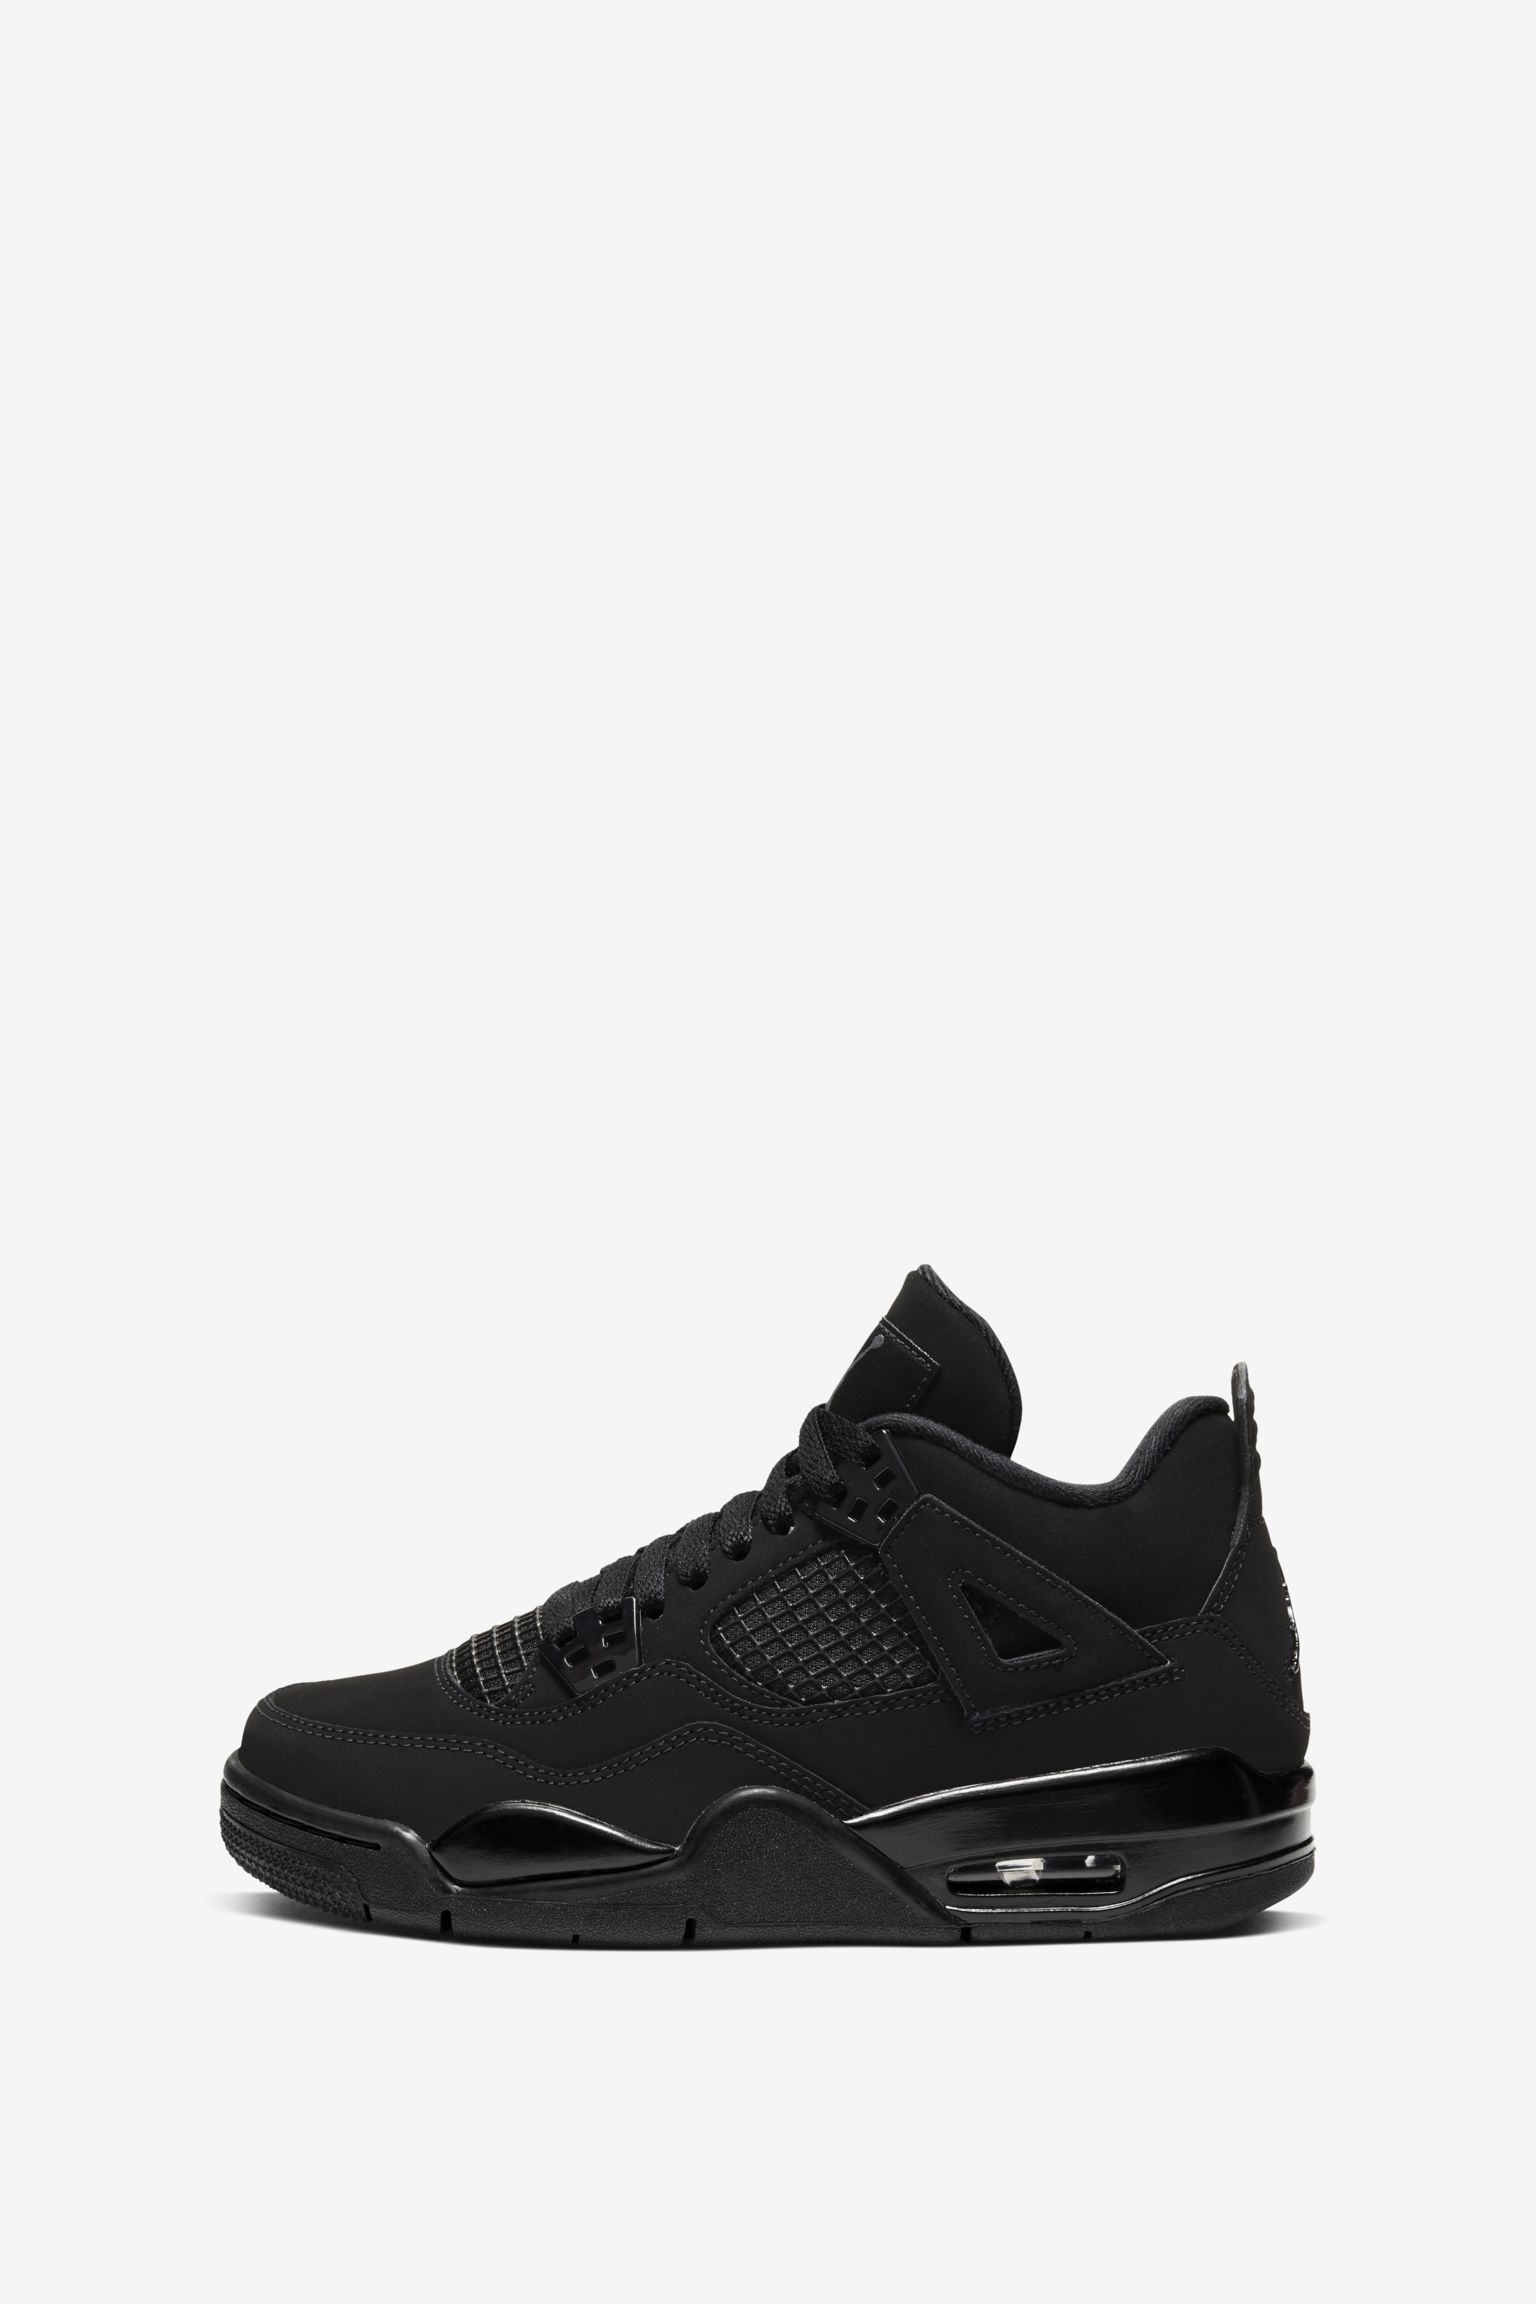 Air Jordan IV 'Black Cat' Release Date. Nike SNKRS CA